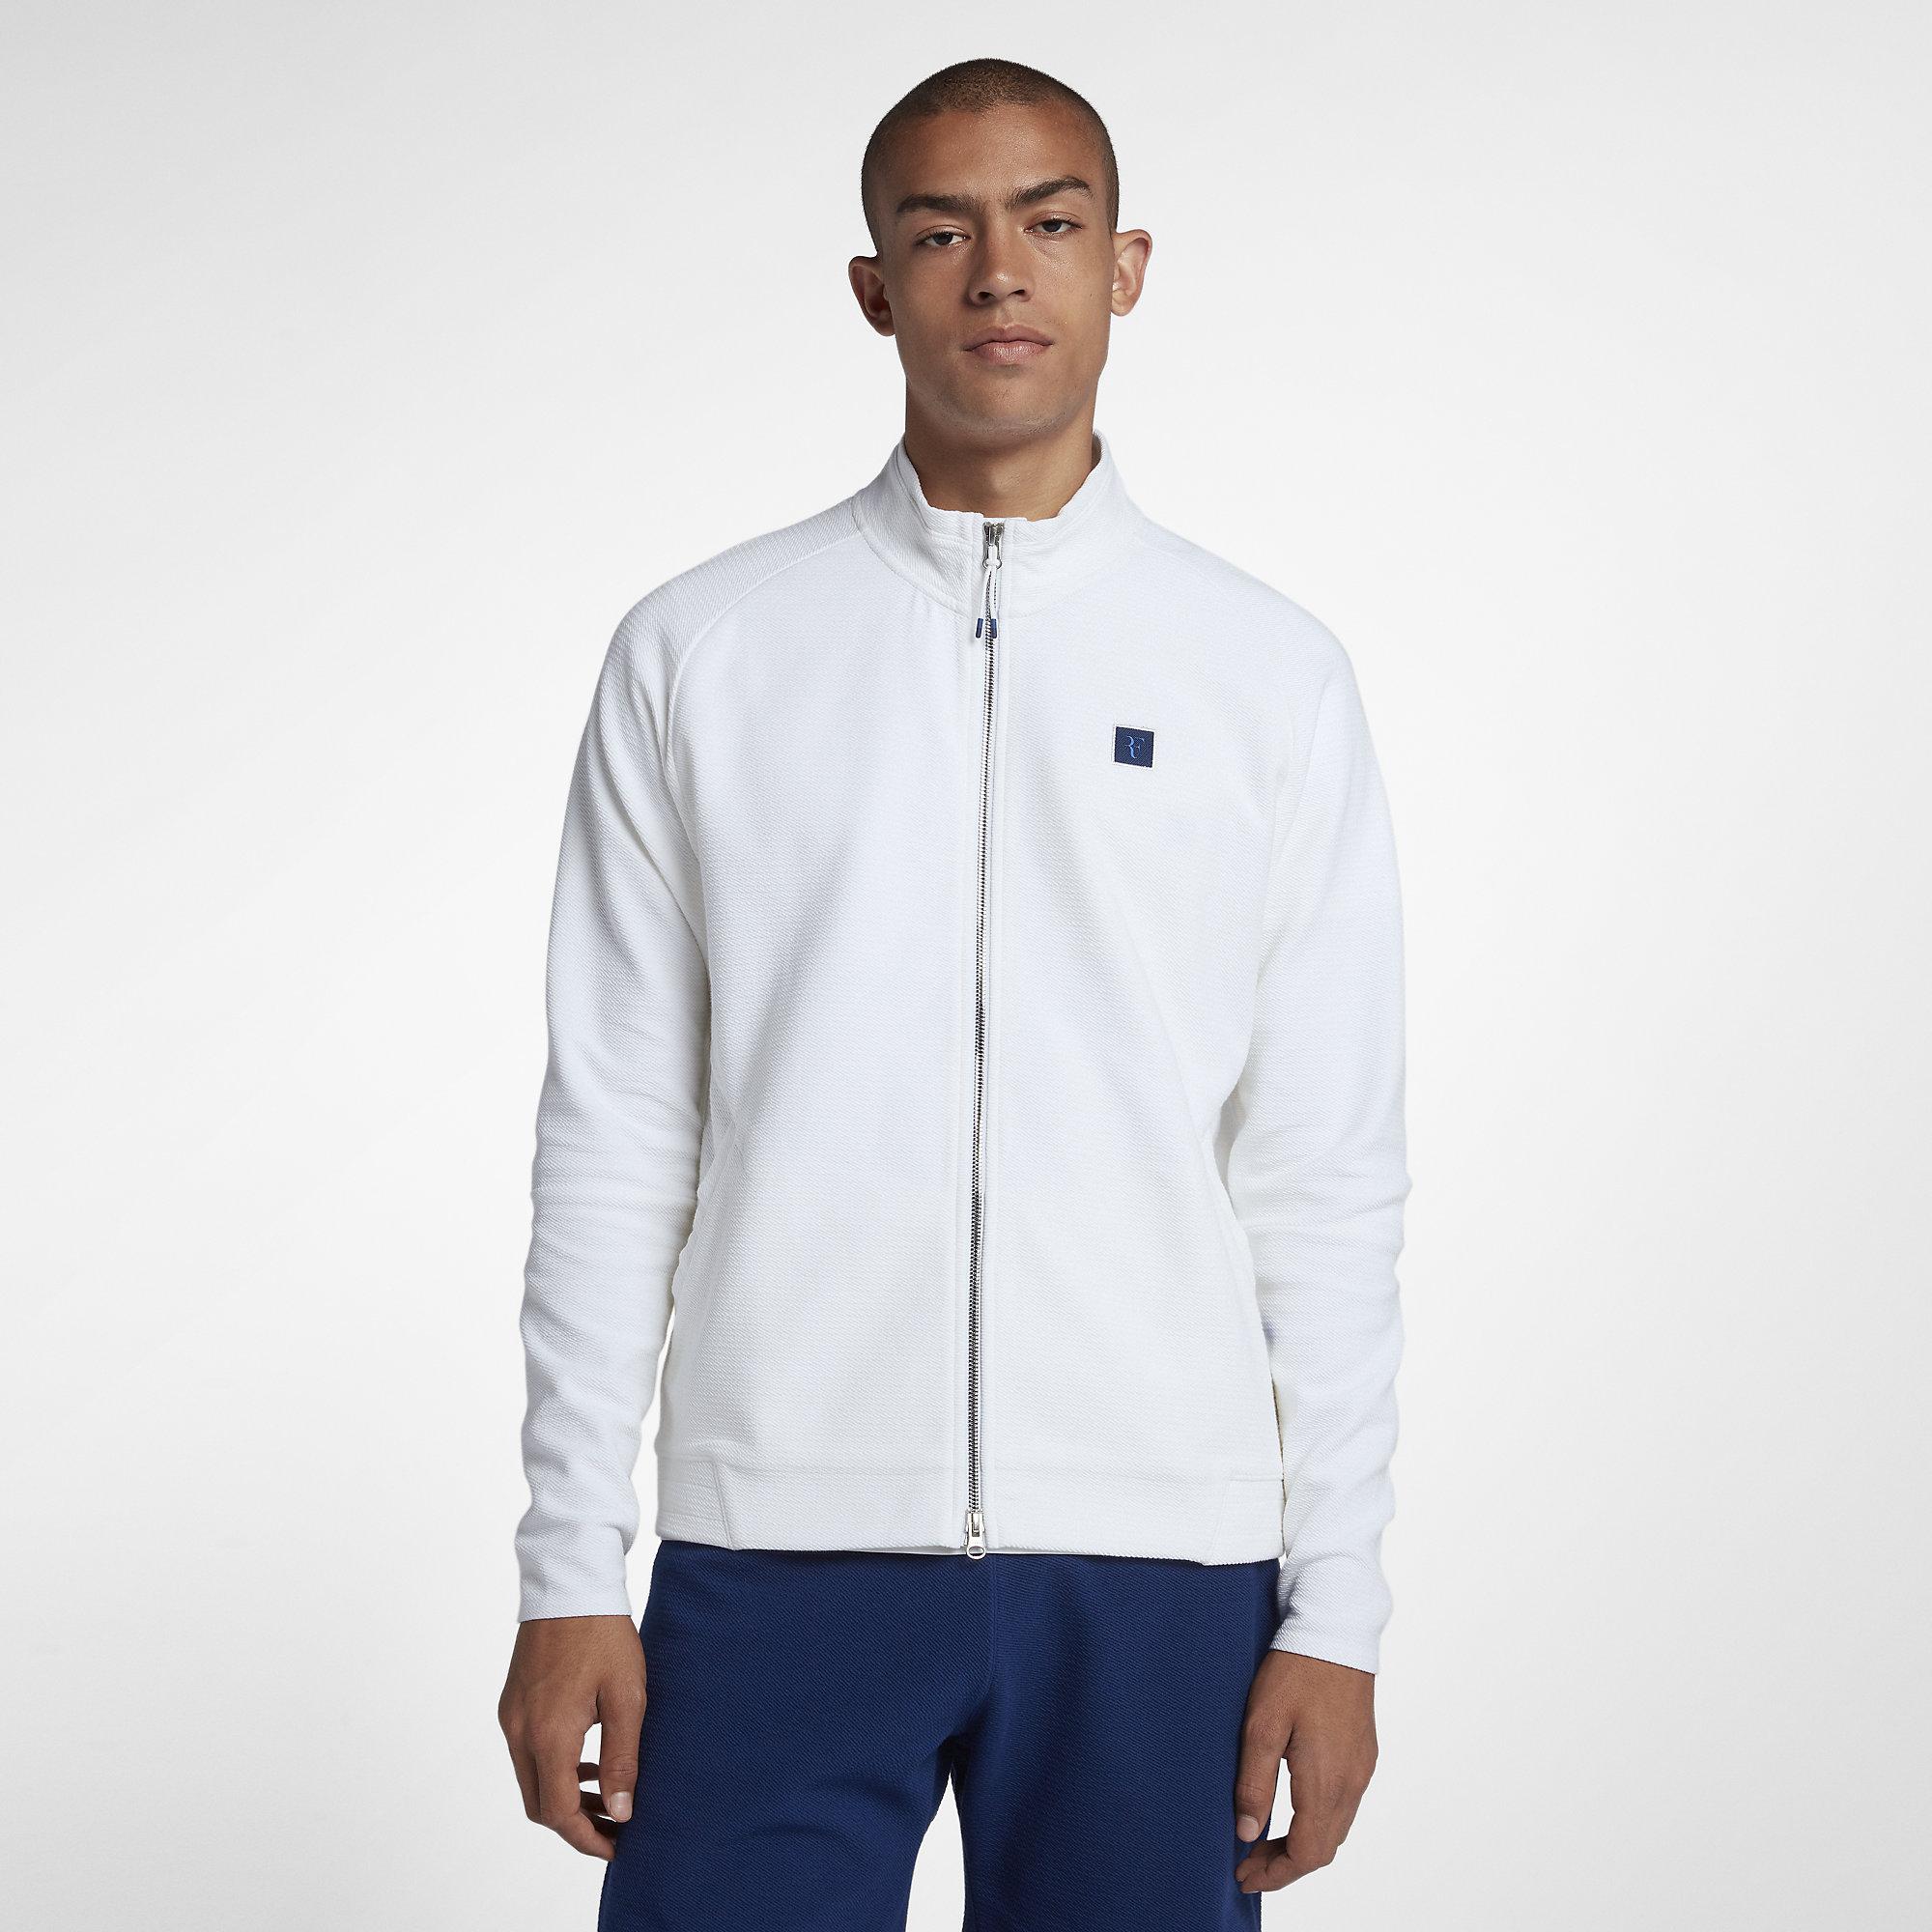 Nike Mens RF Tennis Jacket - White - Tennisnuts.com